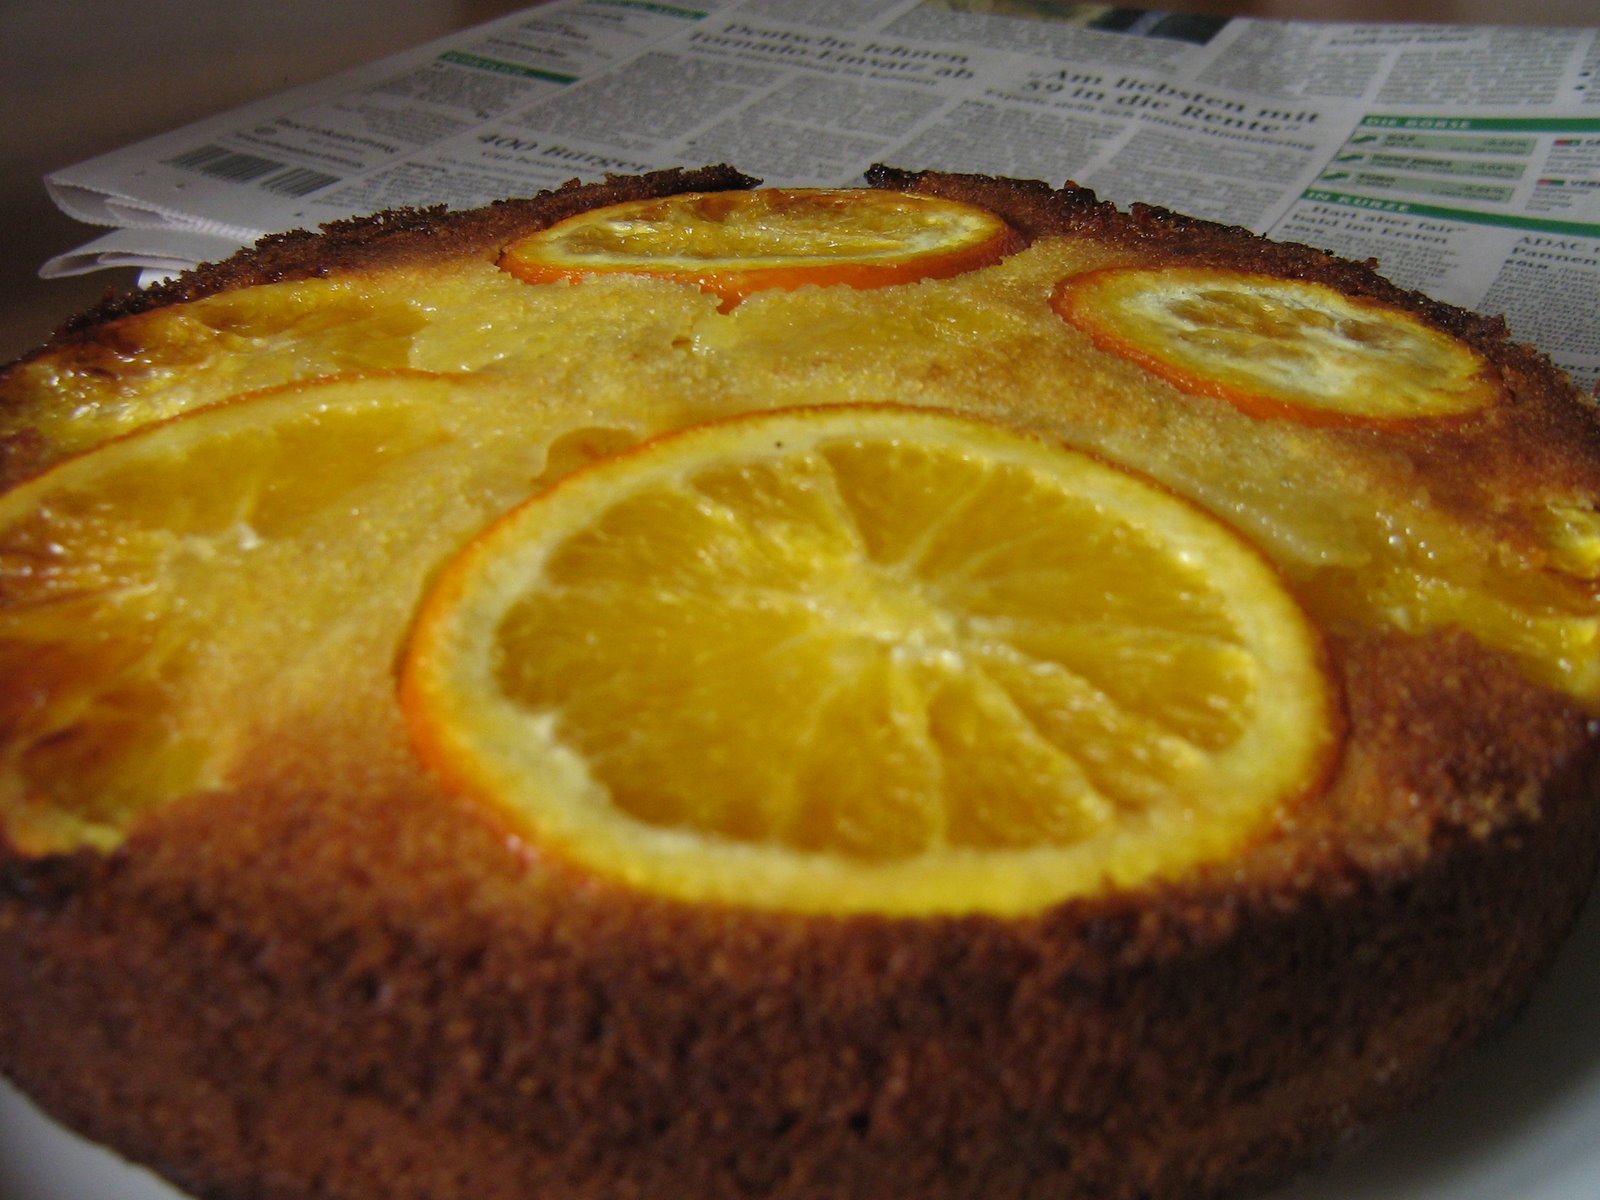 [nigel,+orange+cake,+brownie,+wibele+004.jpg]